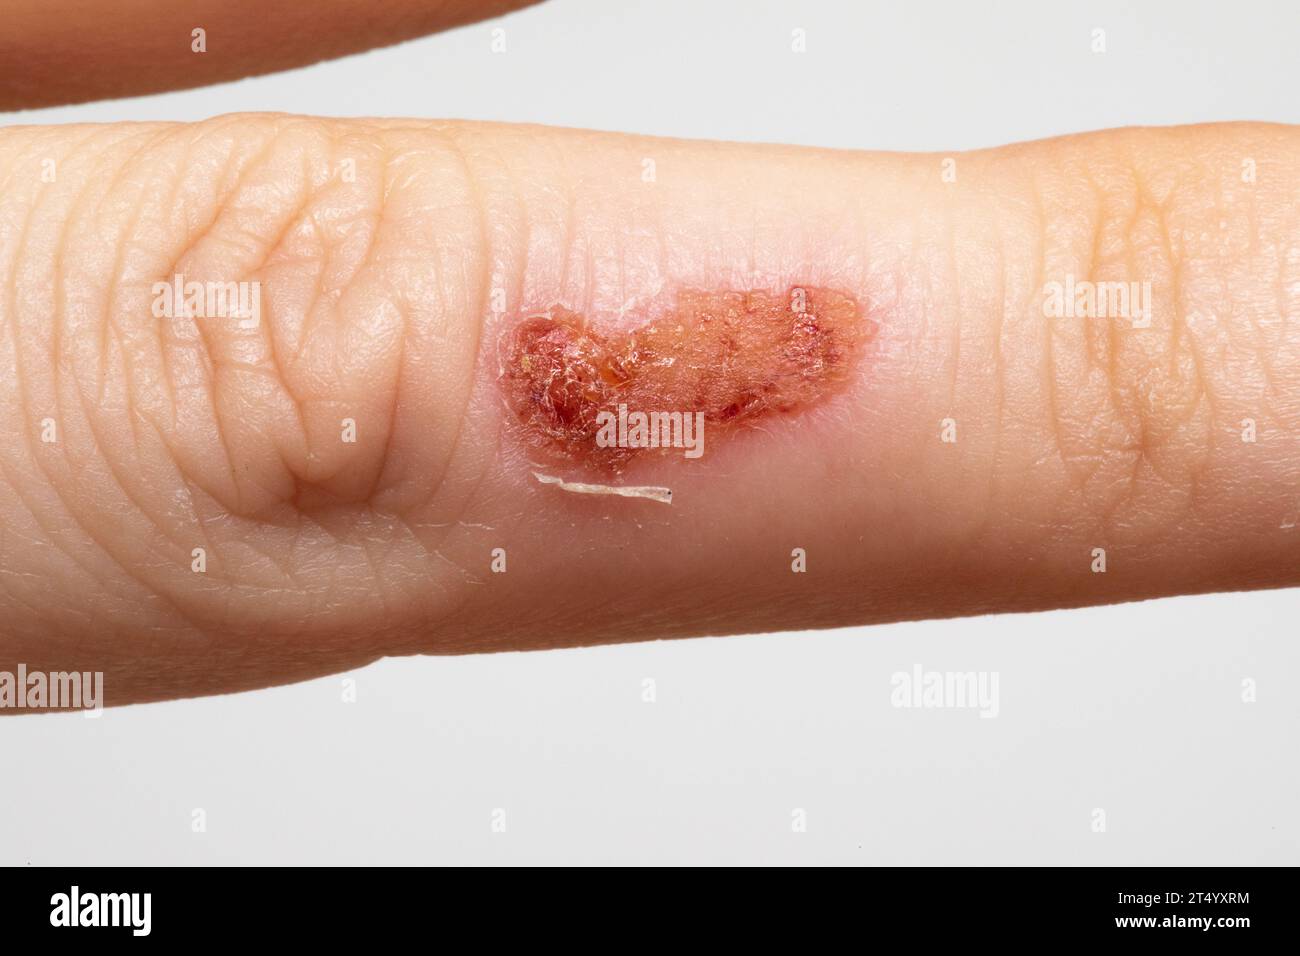 Weibliche Hand mit Schorf aufgrund von Impetigo, einer ansteckenden bakteriellen Infektion, die Hautläsionen verursacht, die durch Staphylococcus aureus und Streptococcus p Stockfoto